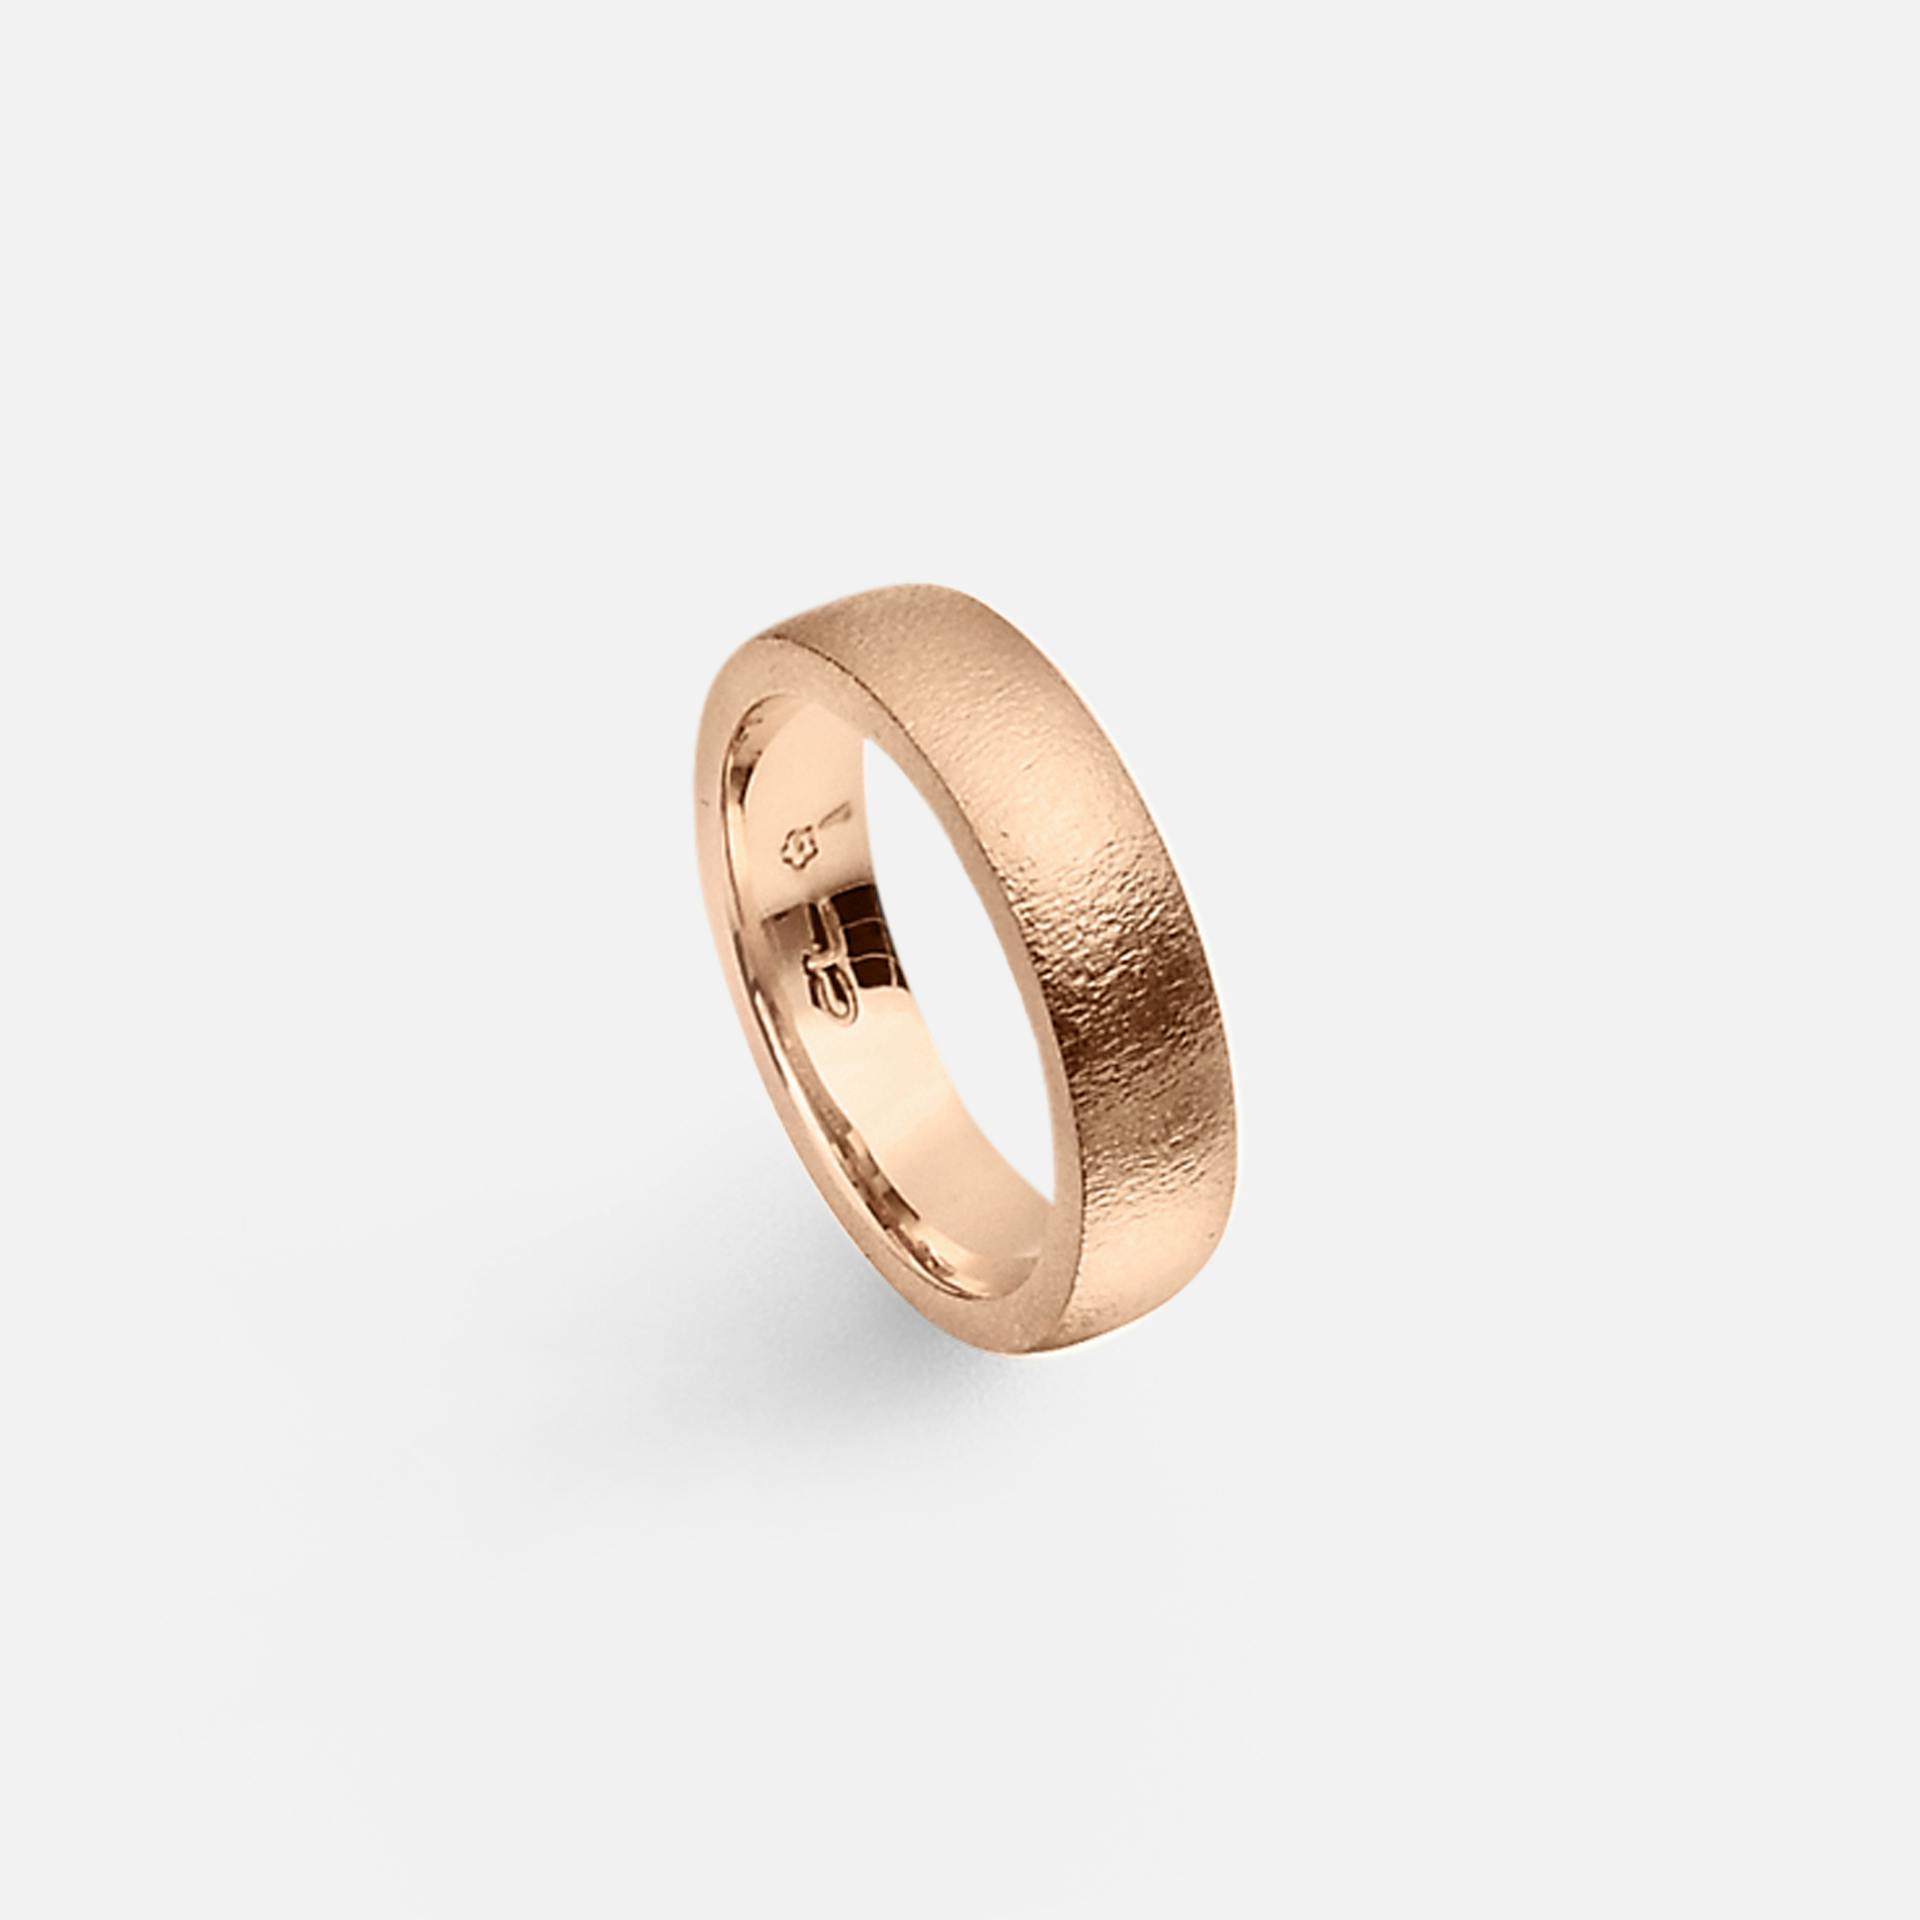 Forever Love Men's Ring in Textured Rose Gold  |  Ole Lynggaard Copenhagen